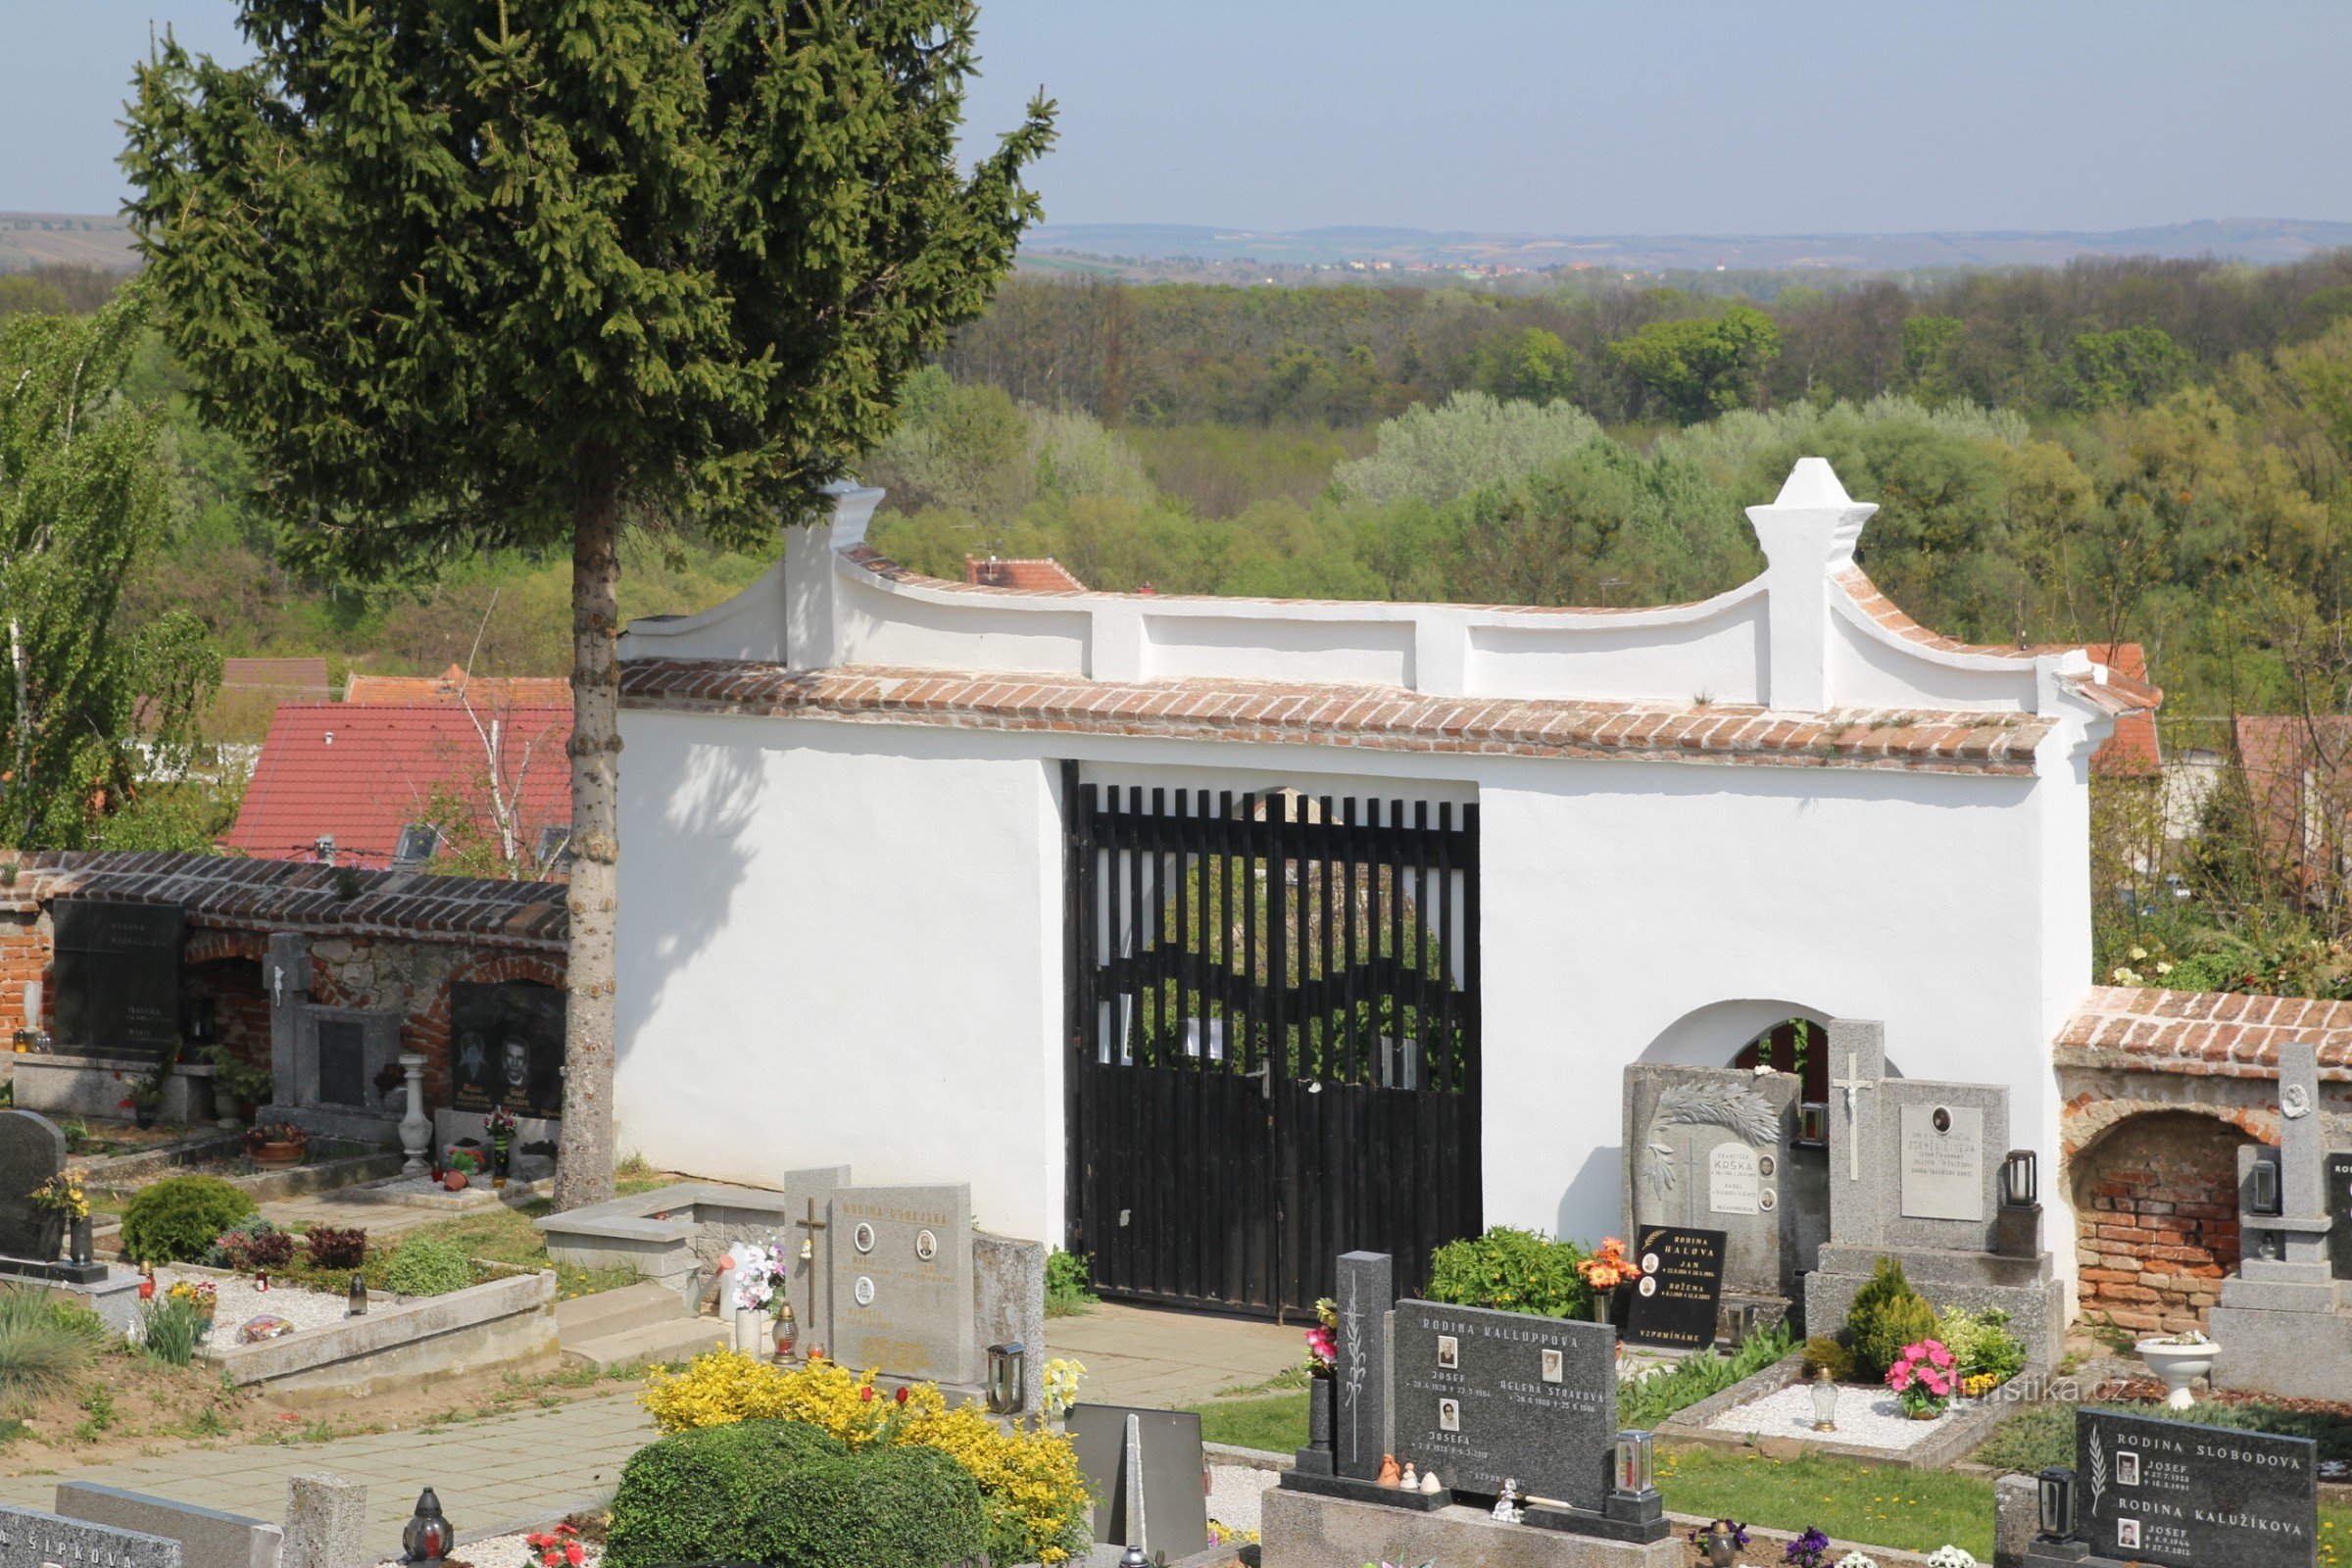 Puerta de entrada y muro del cementerio desde la parte interior